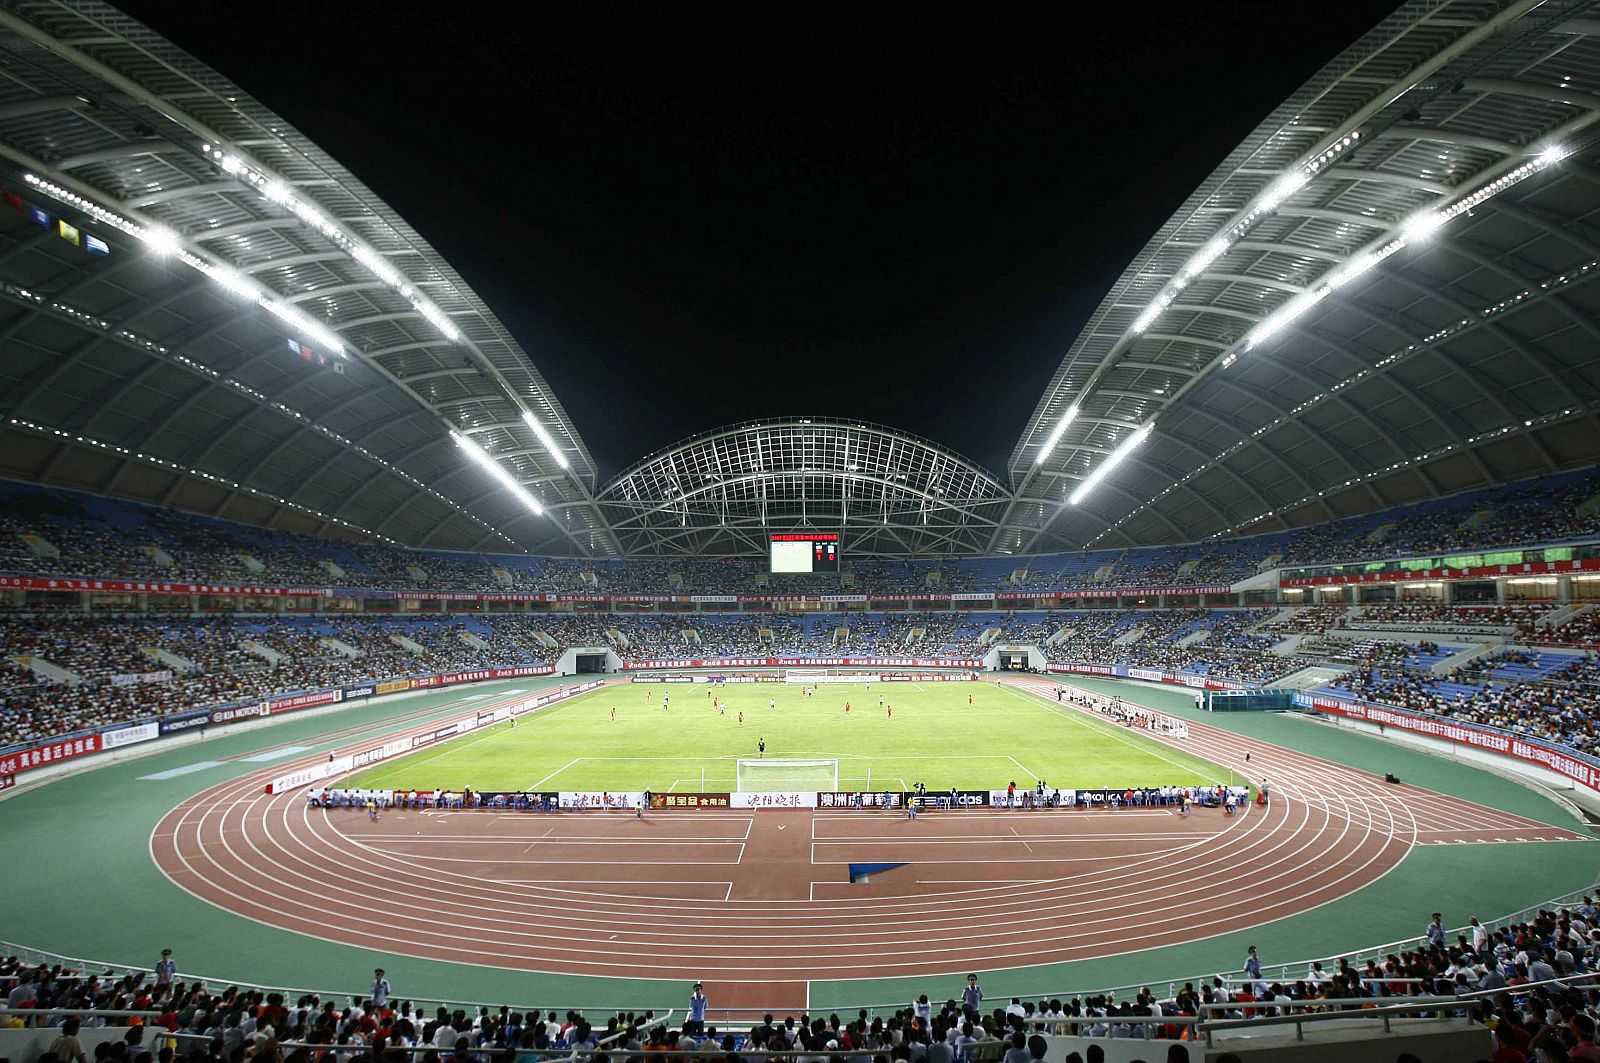 Estadio Olímpico de Shenyang